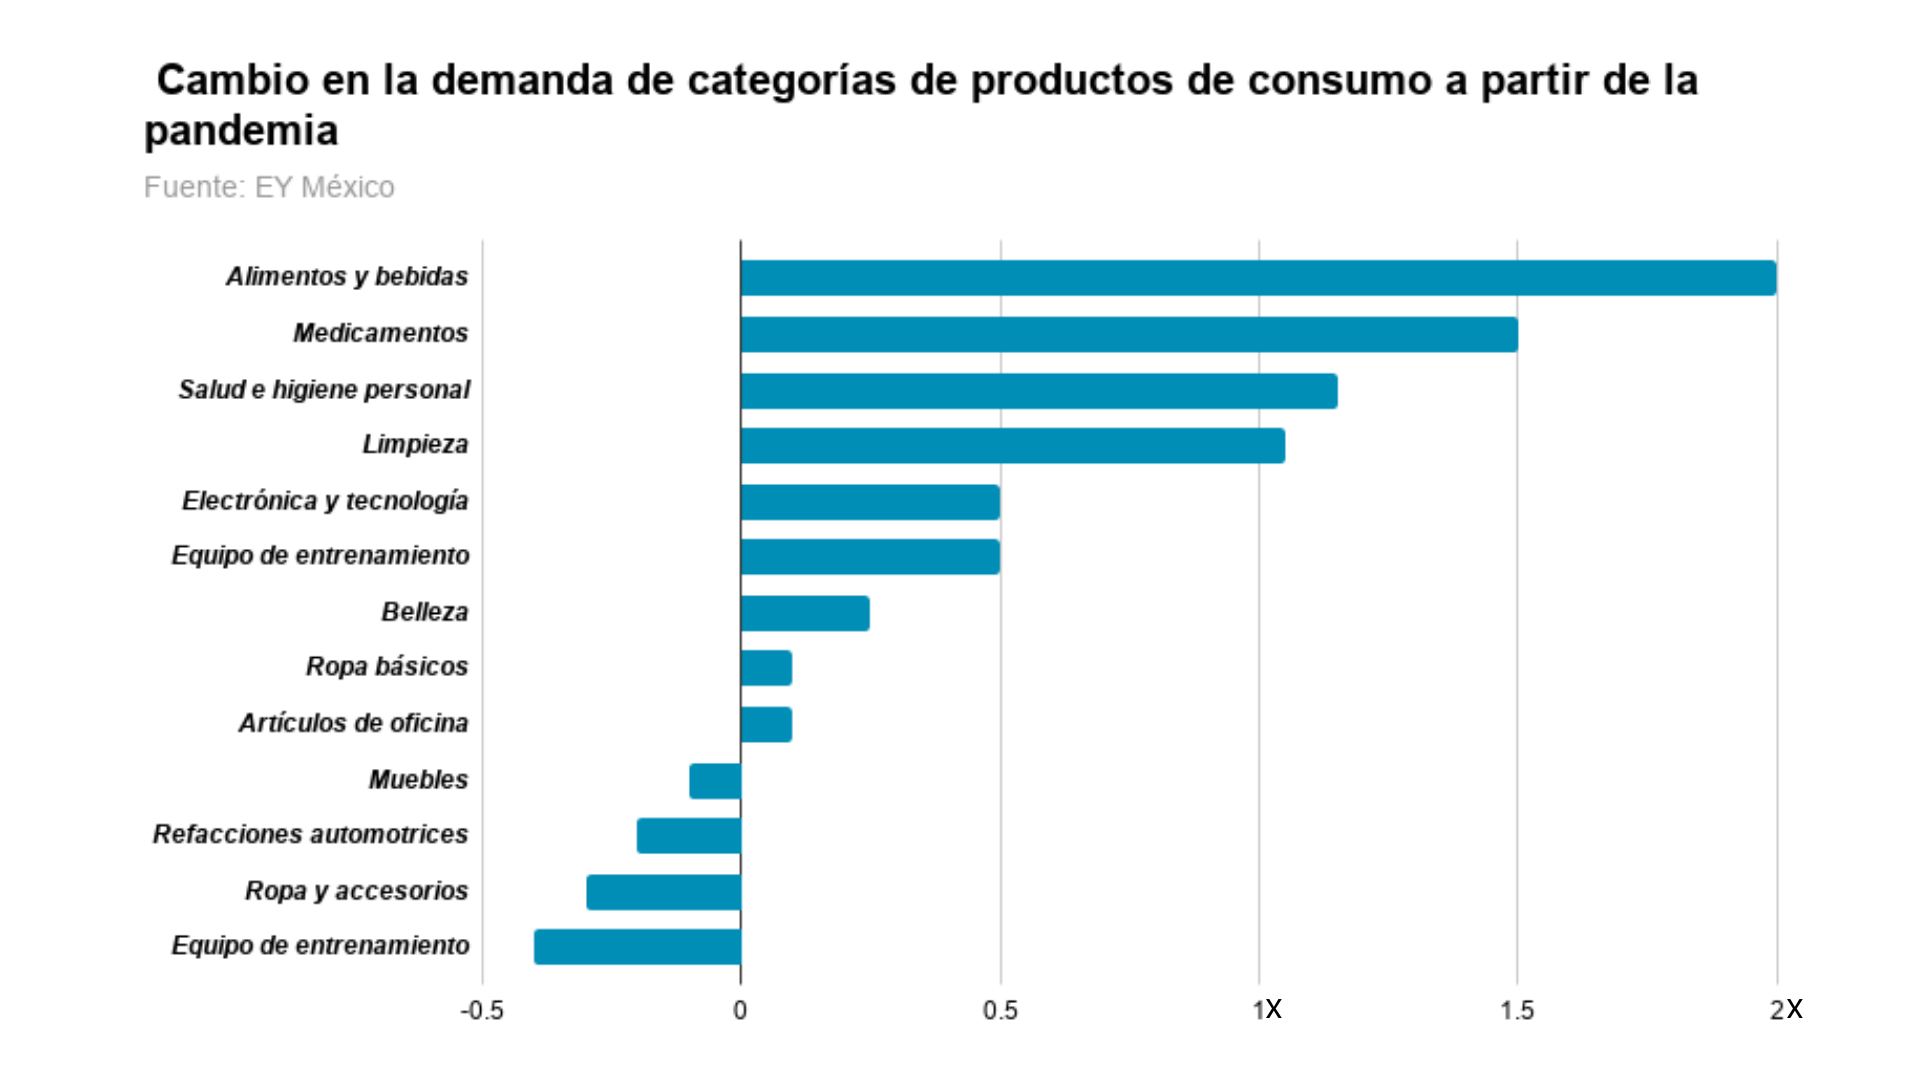 Cambio en la demanda de categorias de productos de consumo a partir de la pandemia